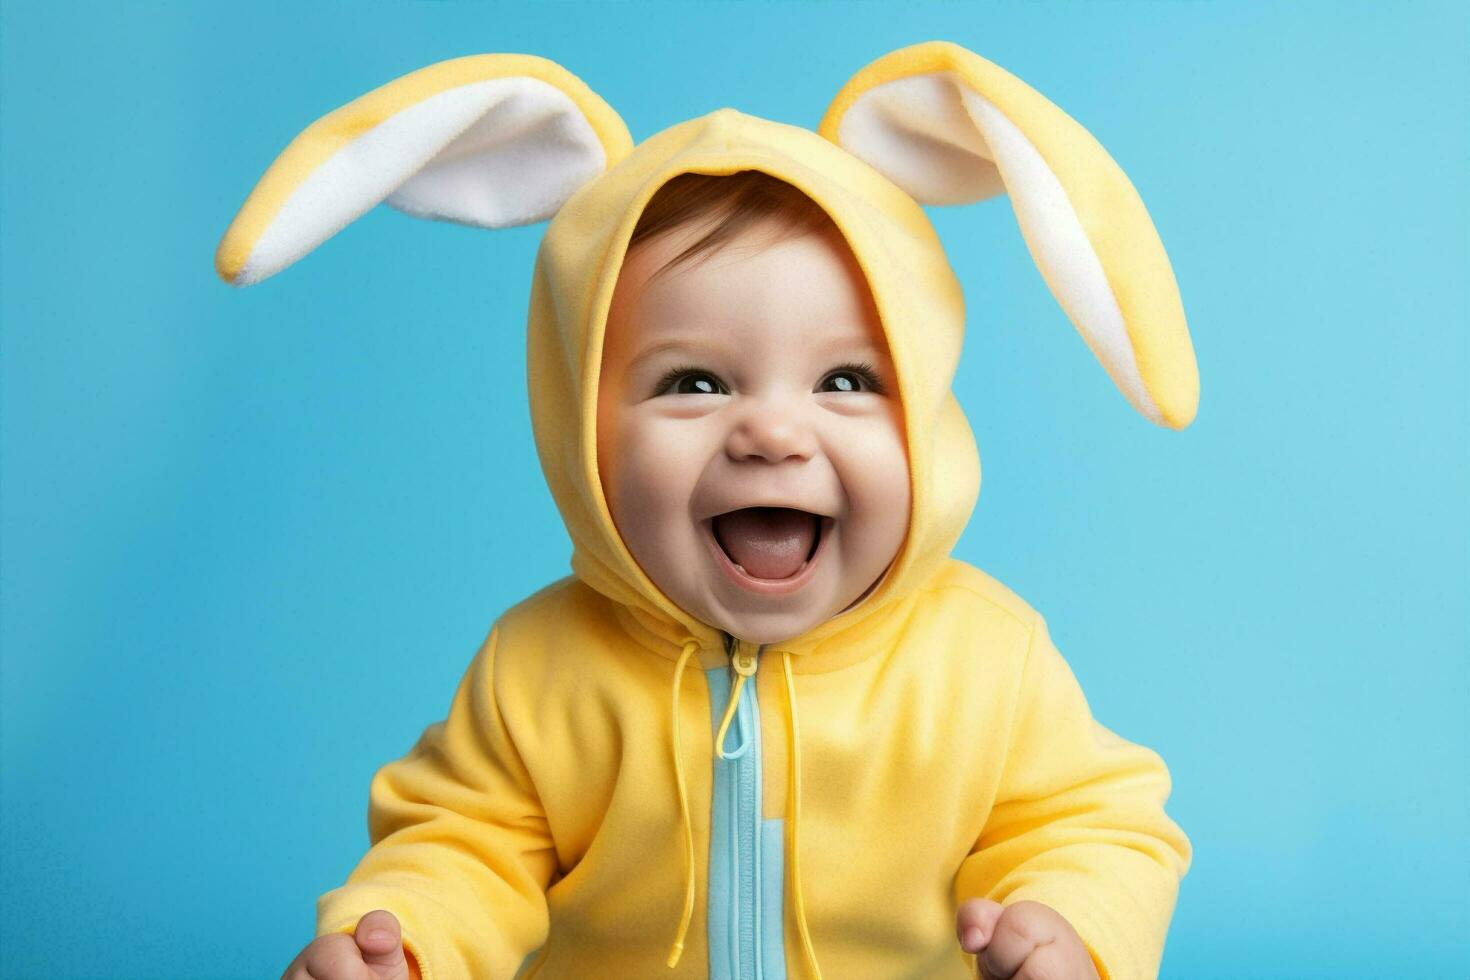 zuigeling aan het liegen portret konijn kleuter konijn baby pret gelukkig schattig voorjaar Pasen kind zoet foto